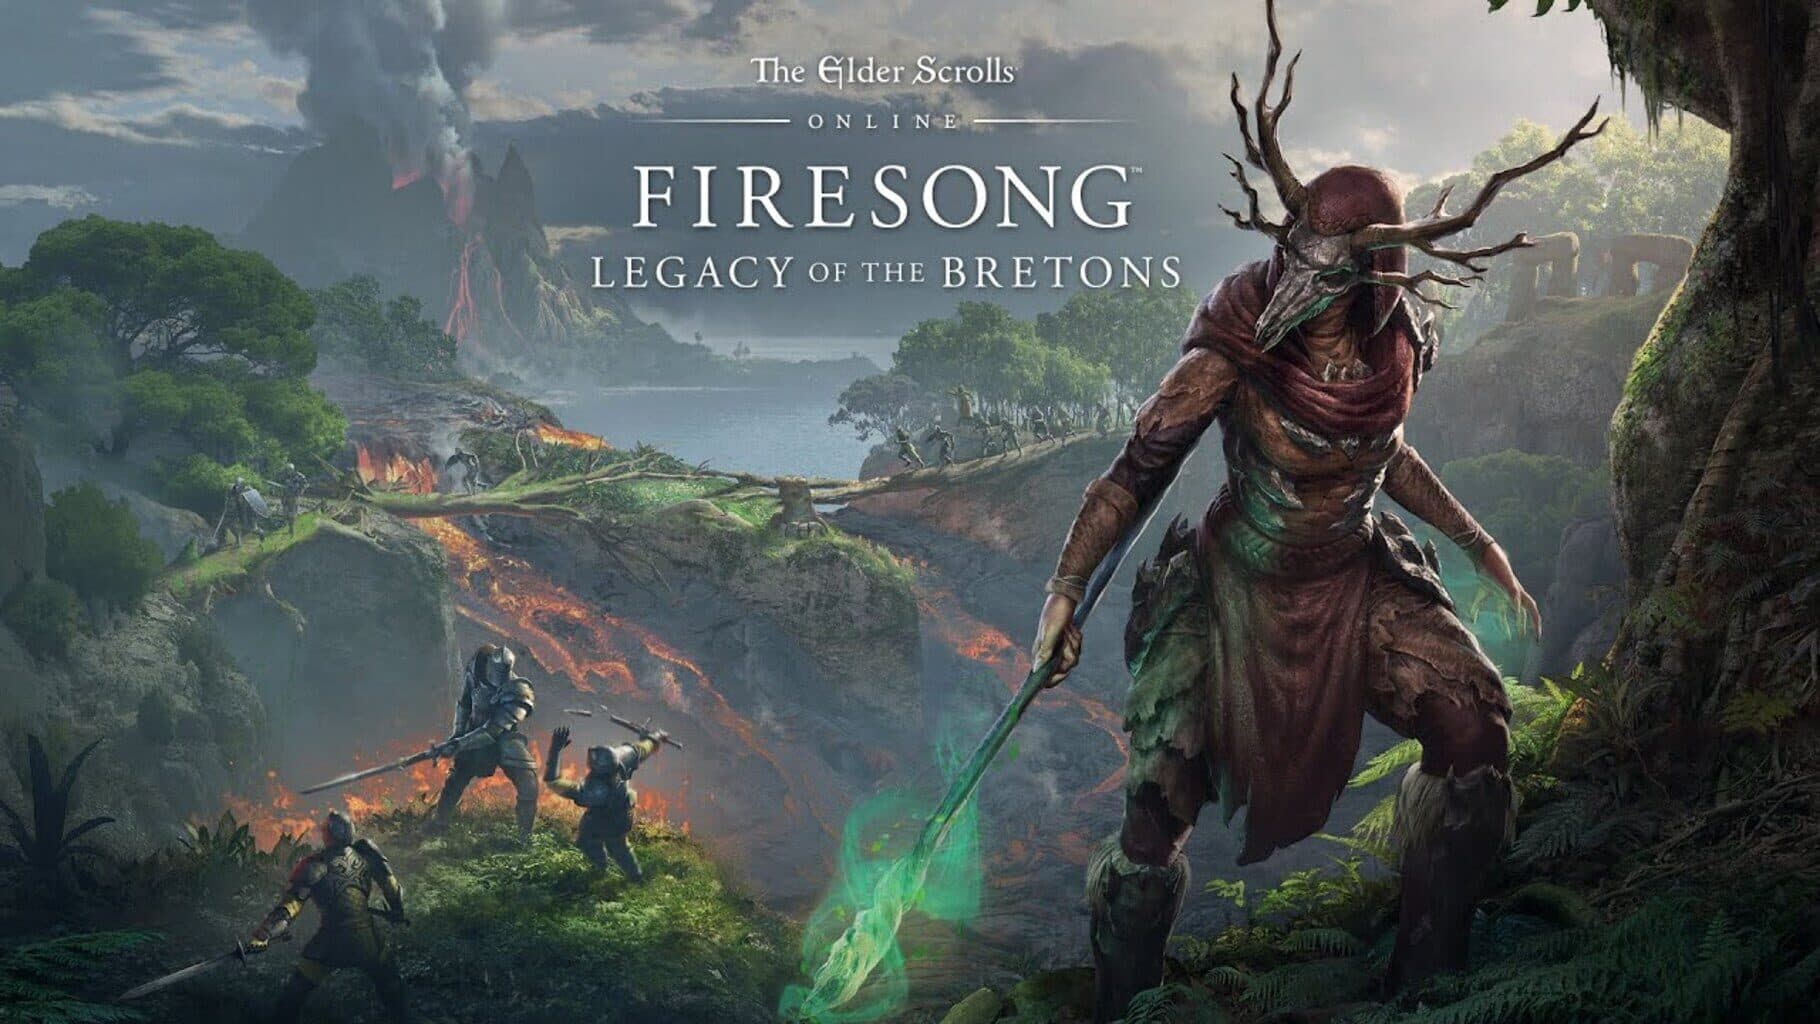 The Elder Scrolls Online: Firesong Image